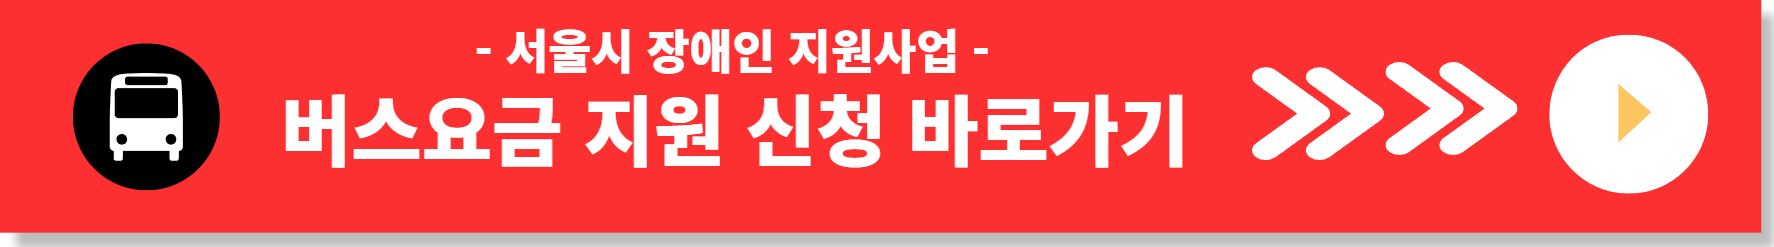 서울시 장애인 버스요금 지원사업 신청방법